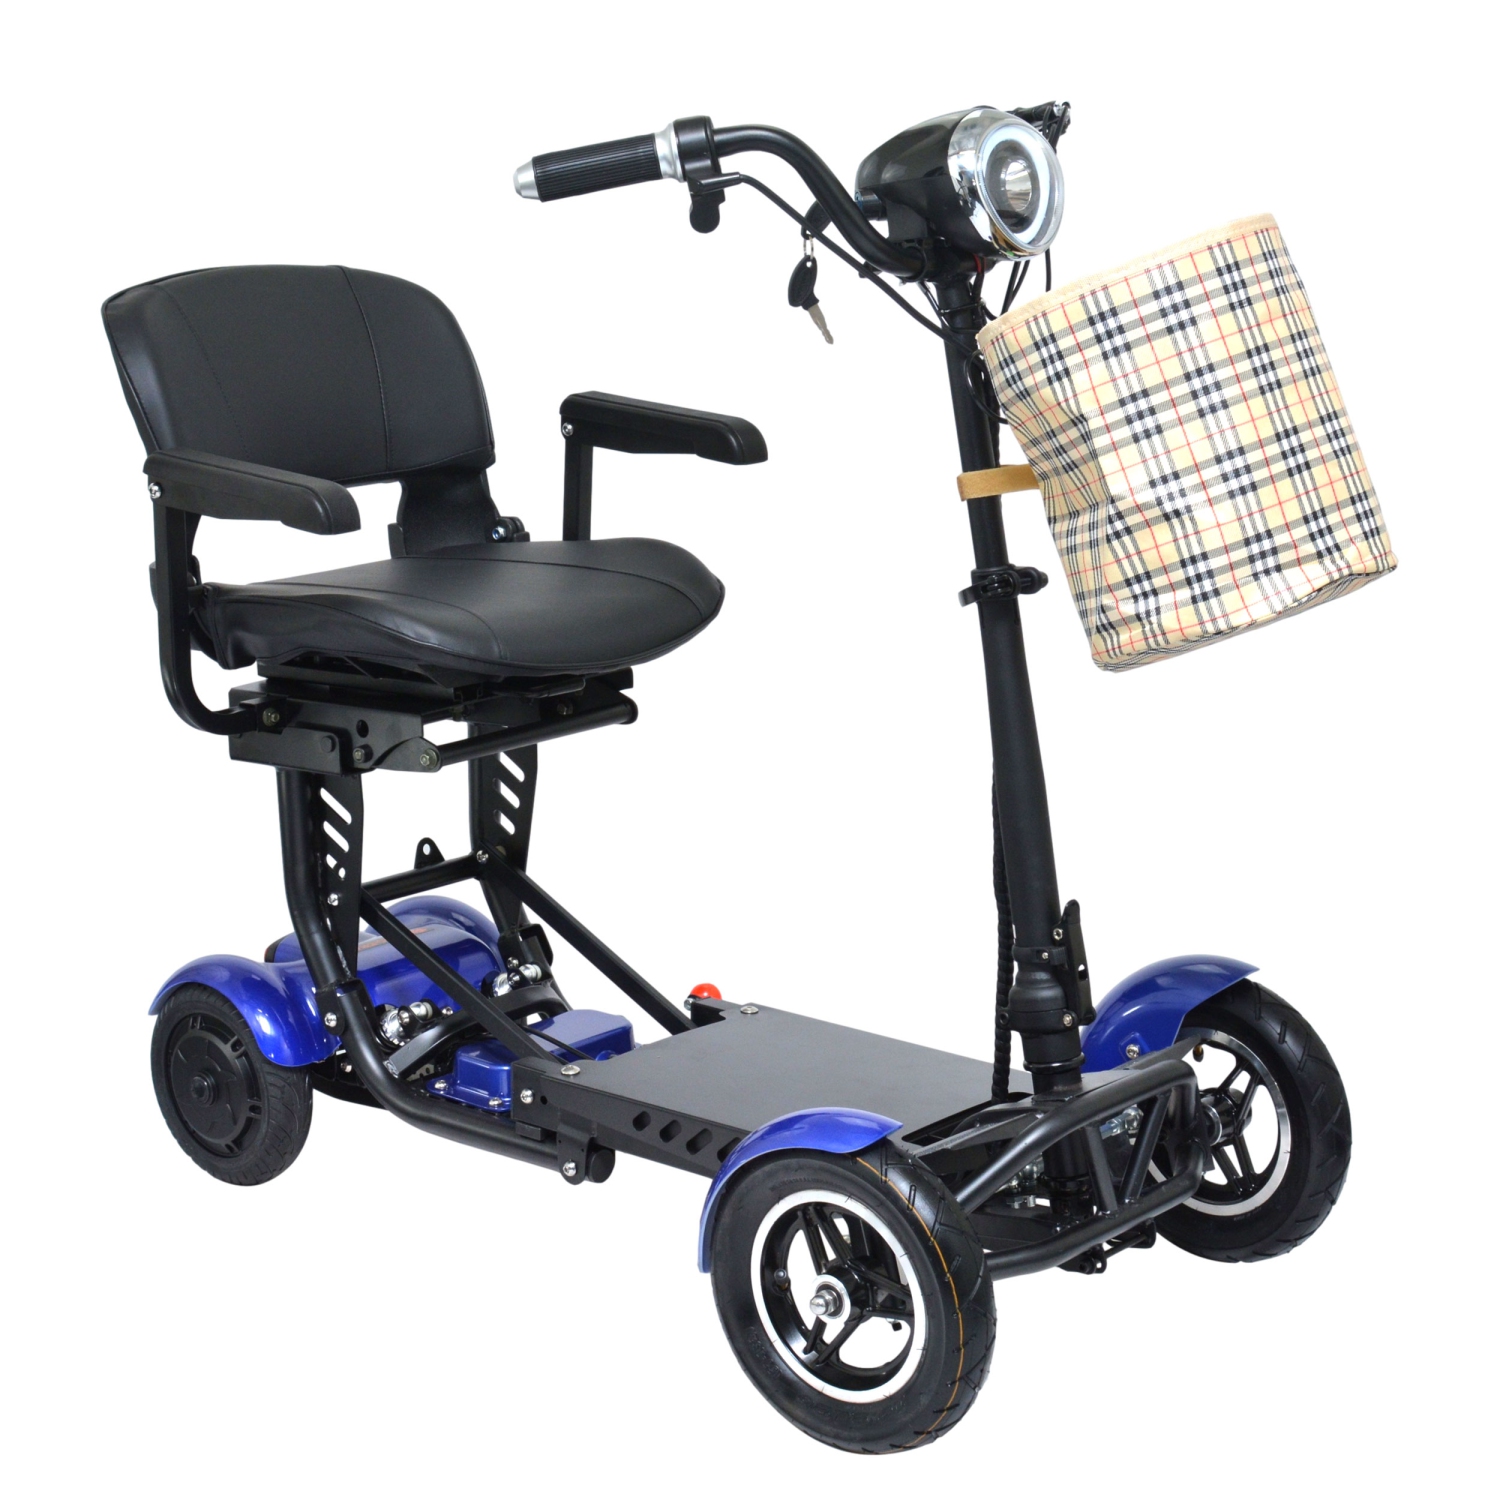 Scooter de mobilité pliable portable léger, 4 roues longue durée de vie de la batterie, voyage facile, jusqu'à 25 miles - couleur bleue